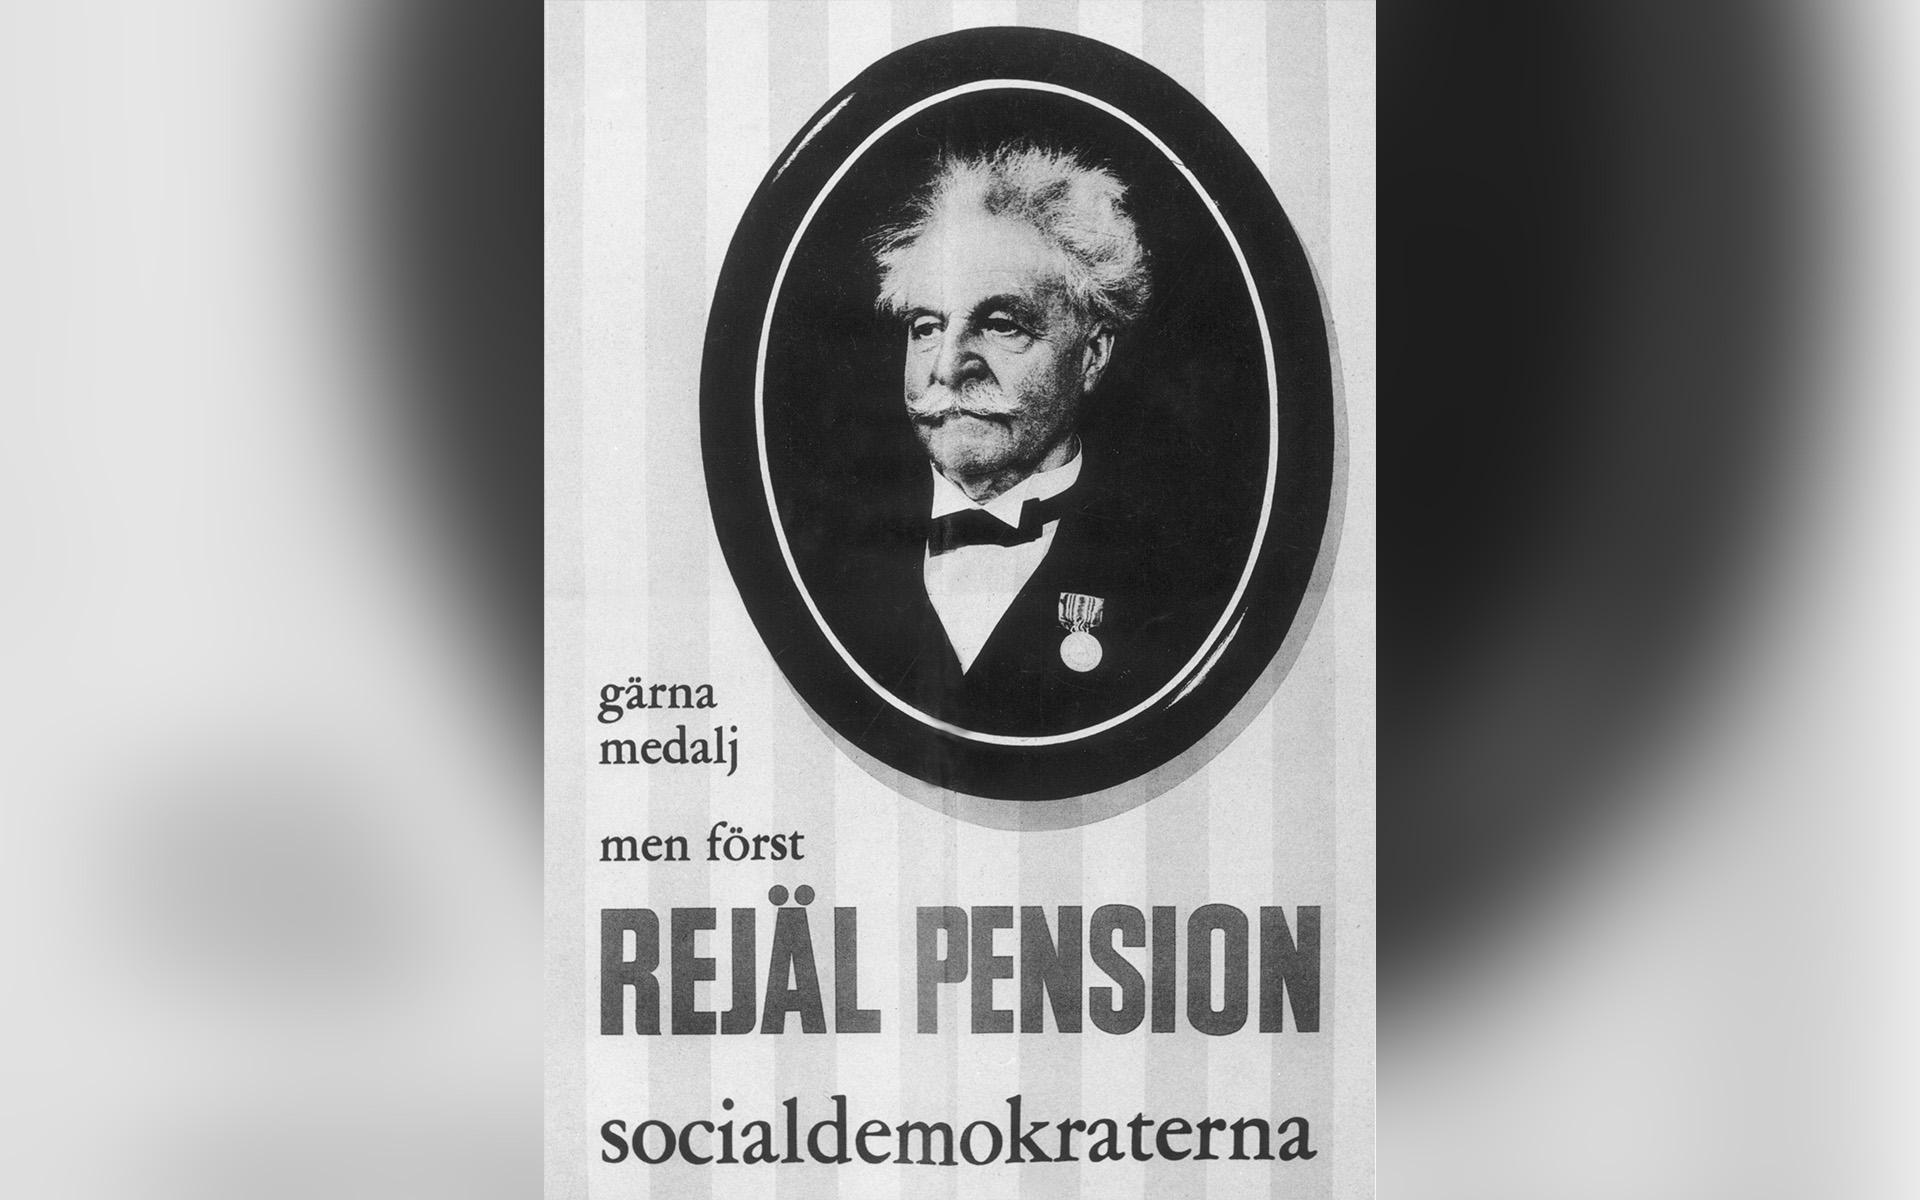 Socialdemokraternas affisch inför extravalet 1958 kan kanske ge idrottsrörelsen en kampanjidé. Foto: TT